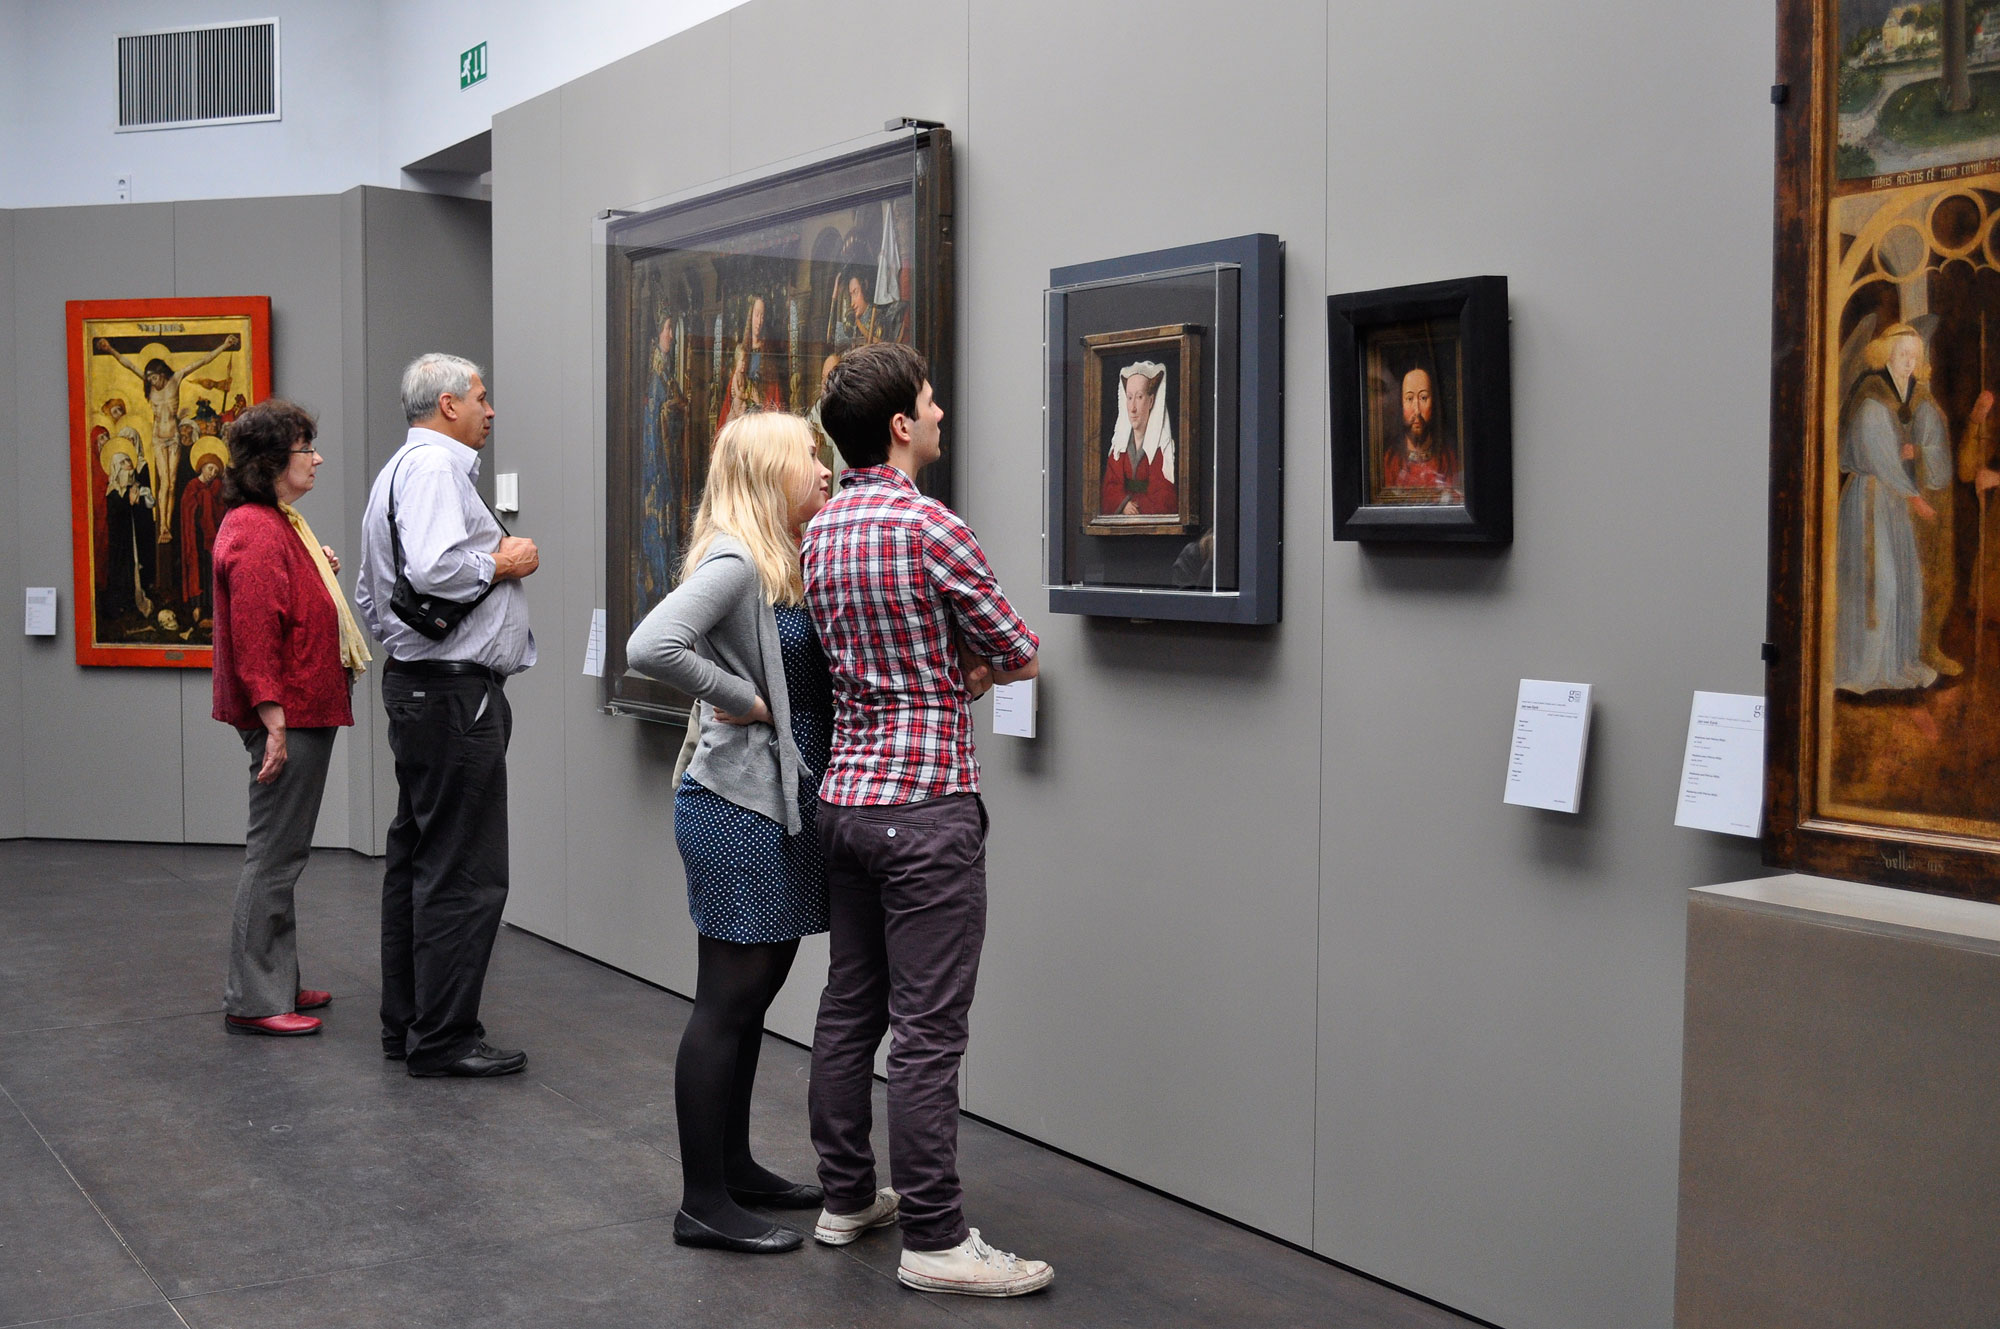 Le opere di Van Eyck al Groeninge Museum. Ph. Credit Sarah Bauwens
